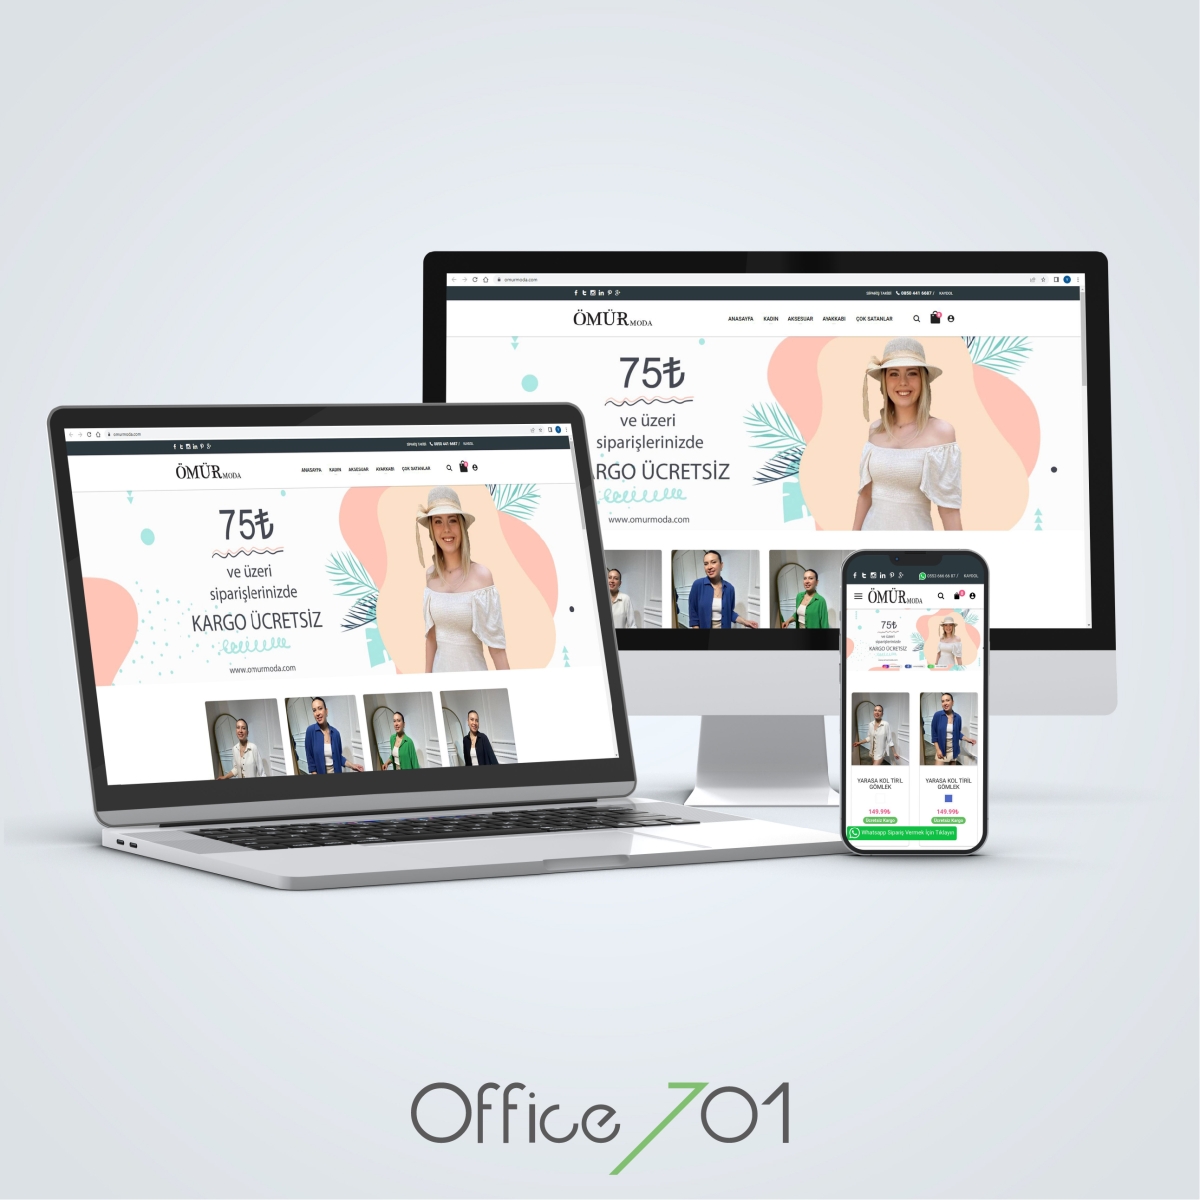 Office701 | Ömür Moda E-ticaret Sitesi